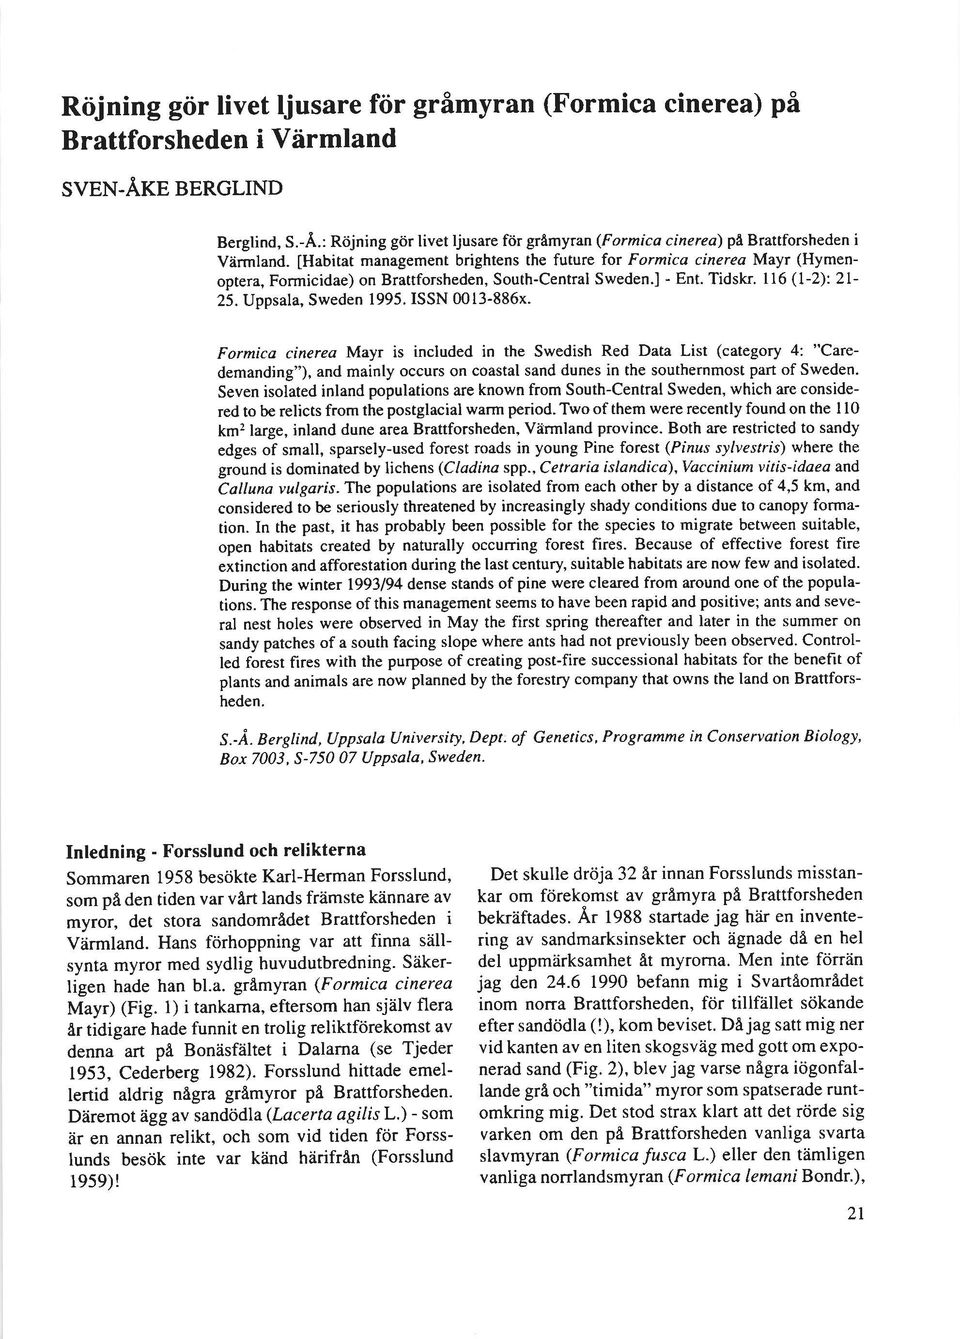 [Habitat management brightens the future for Formica cinerea Mayr (Hymenoptera, Formicidae) on Brattforsheden, South-Central Sweden.l - Ent. Tidskr. 116 (L-2):21-25. Uppsala, Sweden 1995.